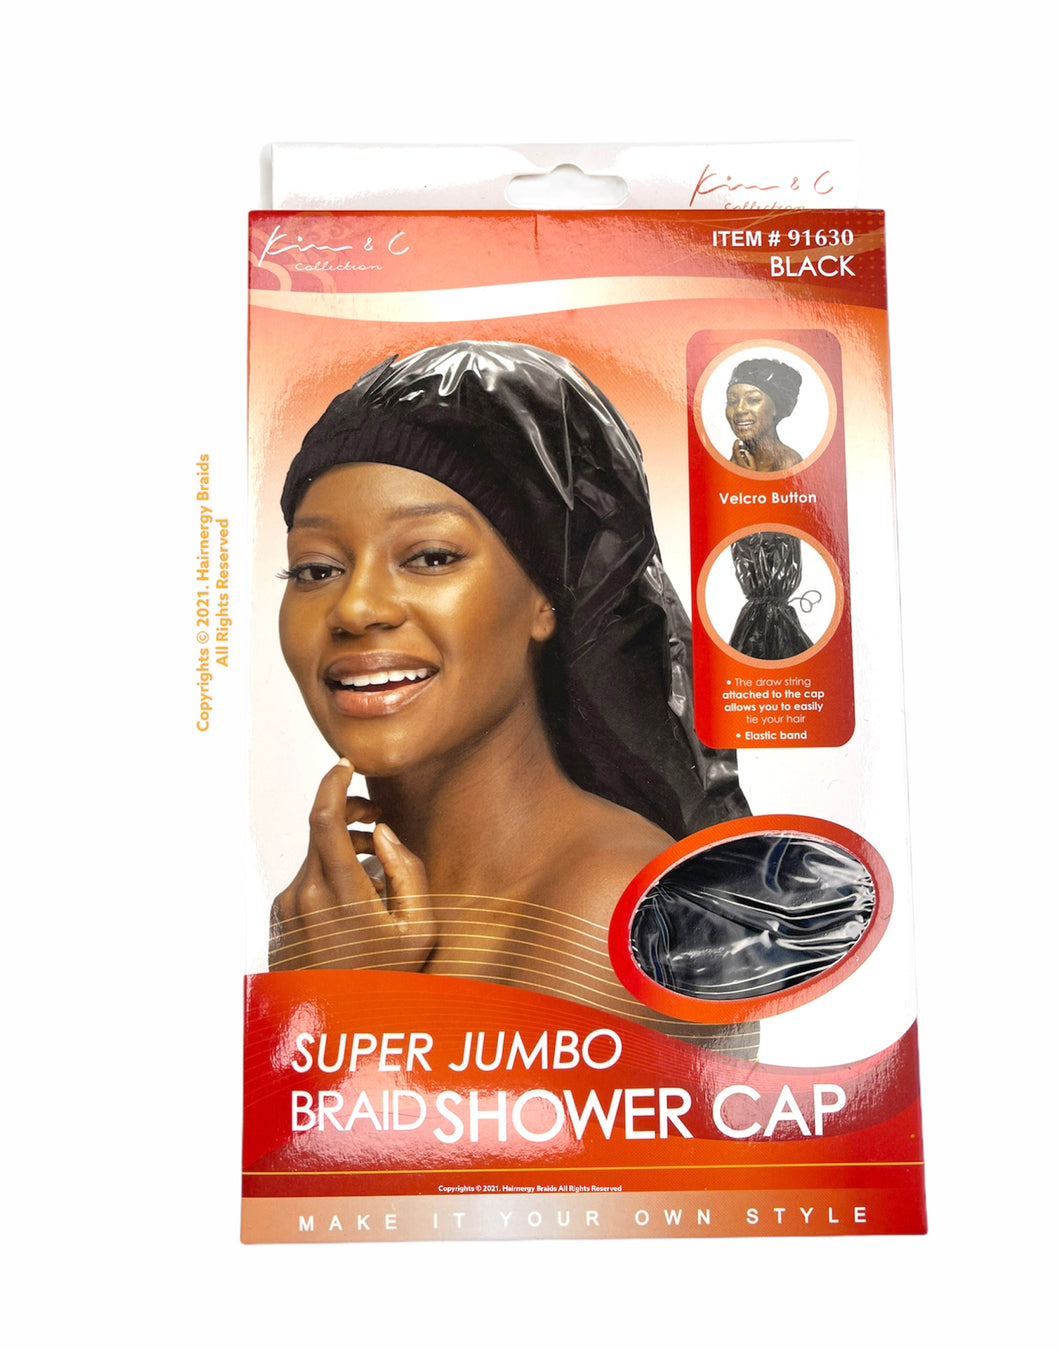 Super Jumbo Braid Shower Cap